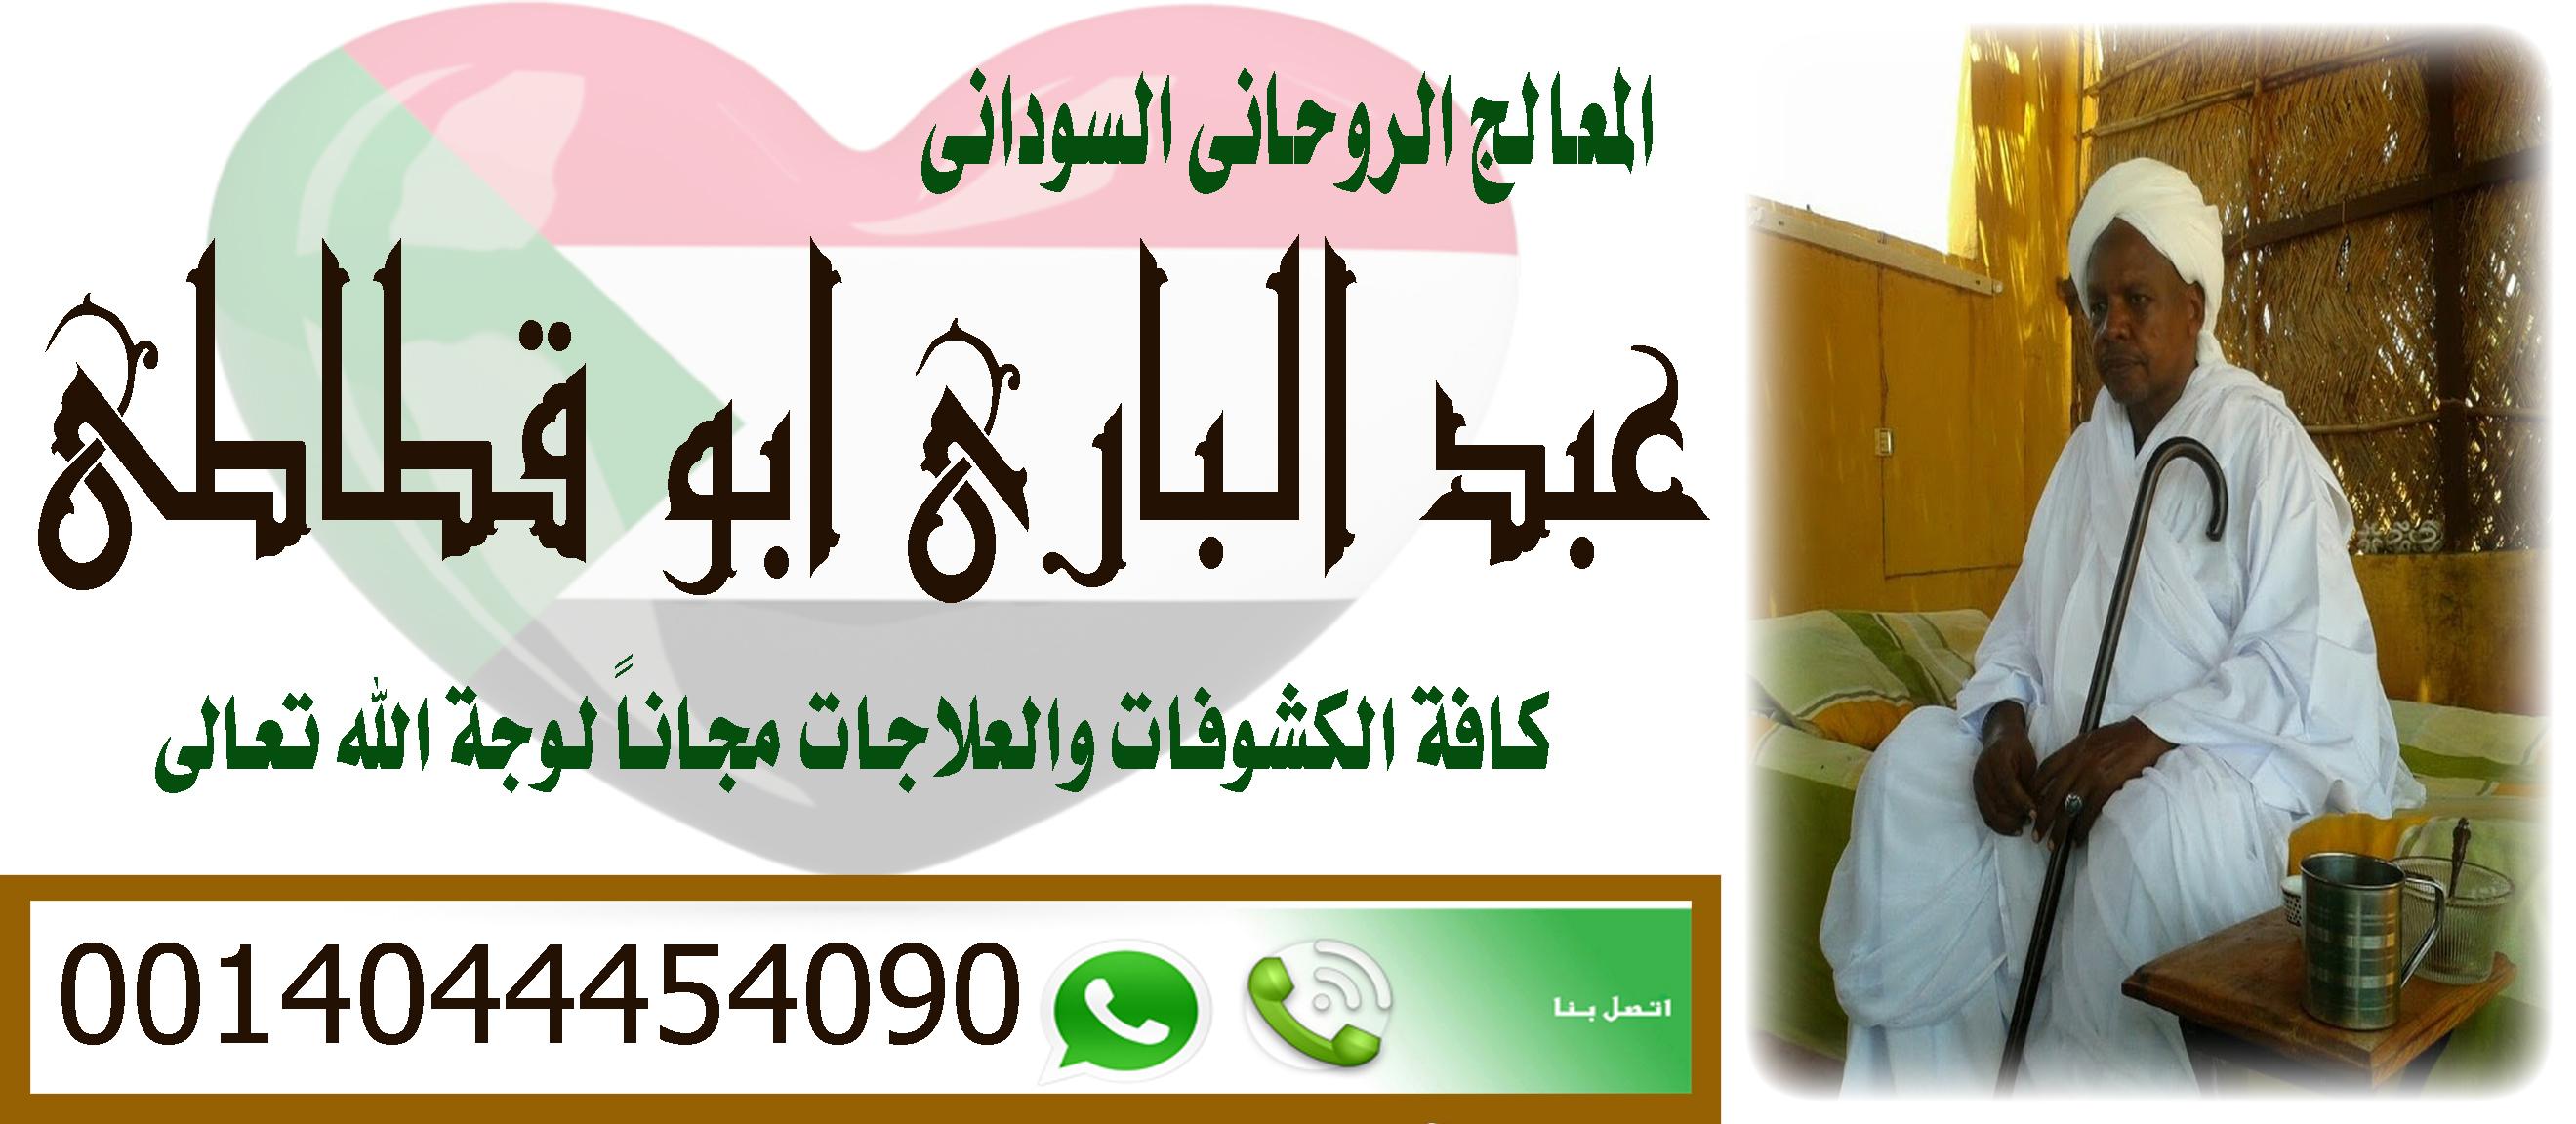 مطوع روحاني يمني مجرب 598255655